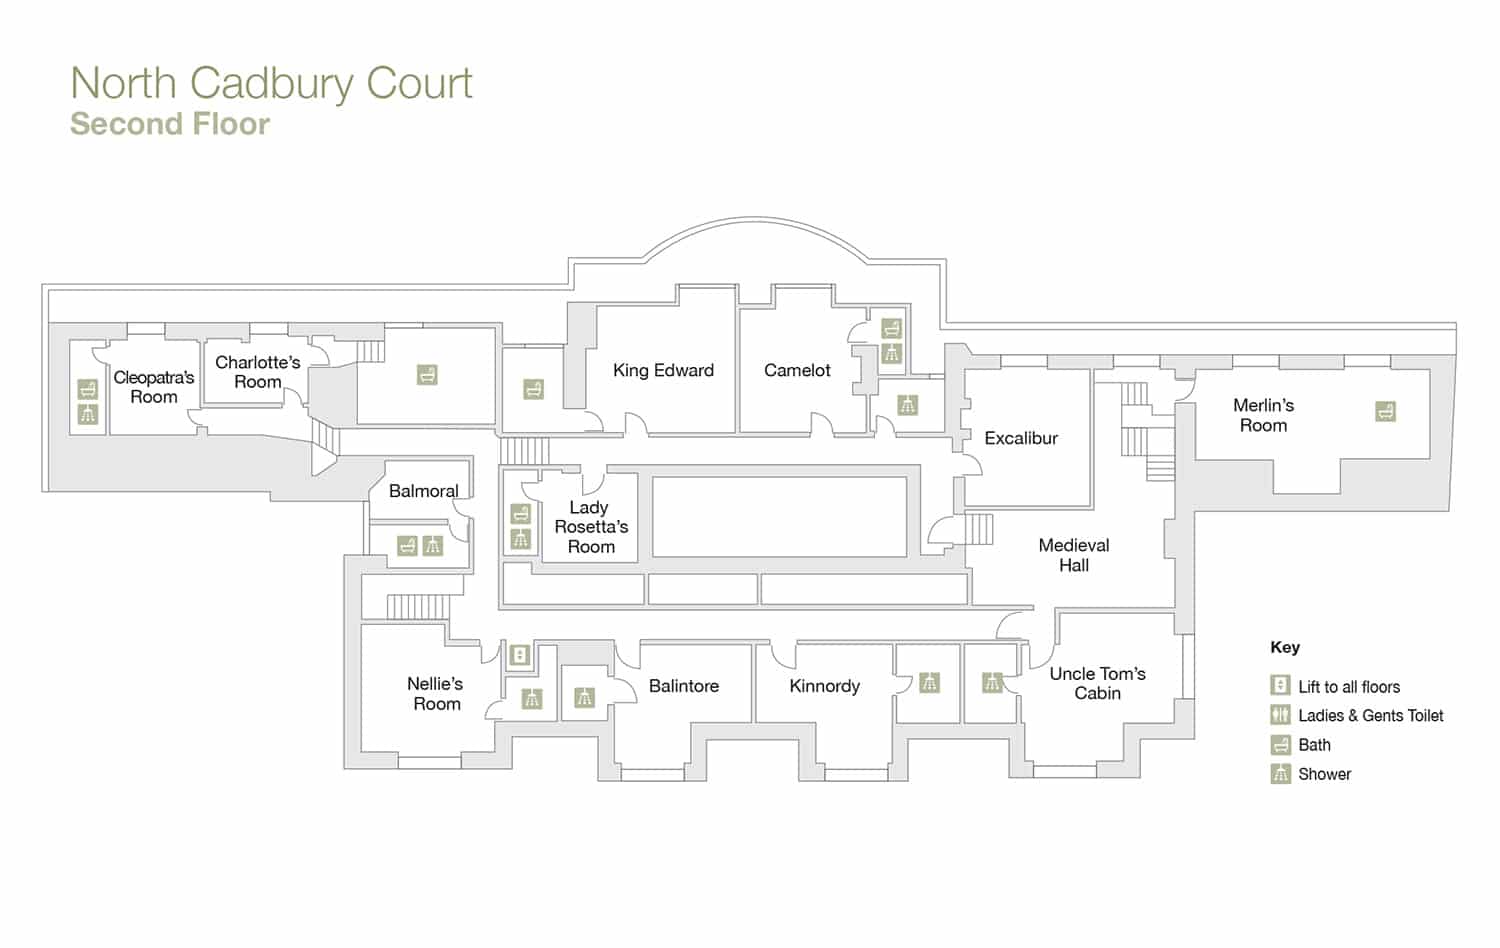 Floor Plan Second Floor - North Cadbury Court